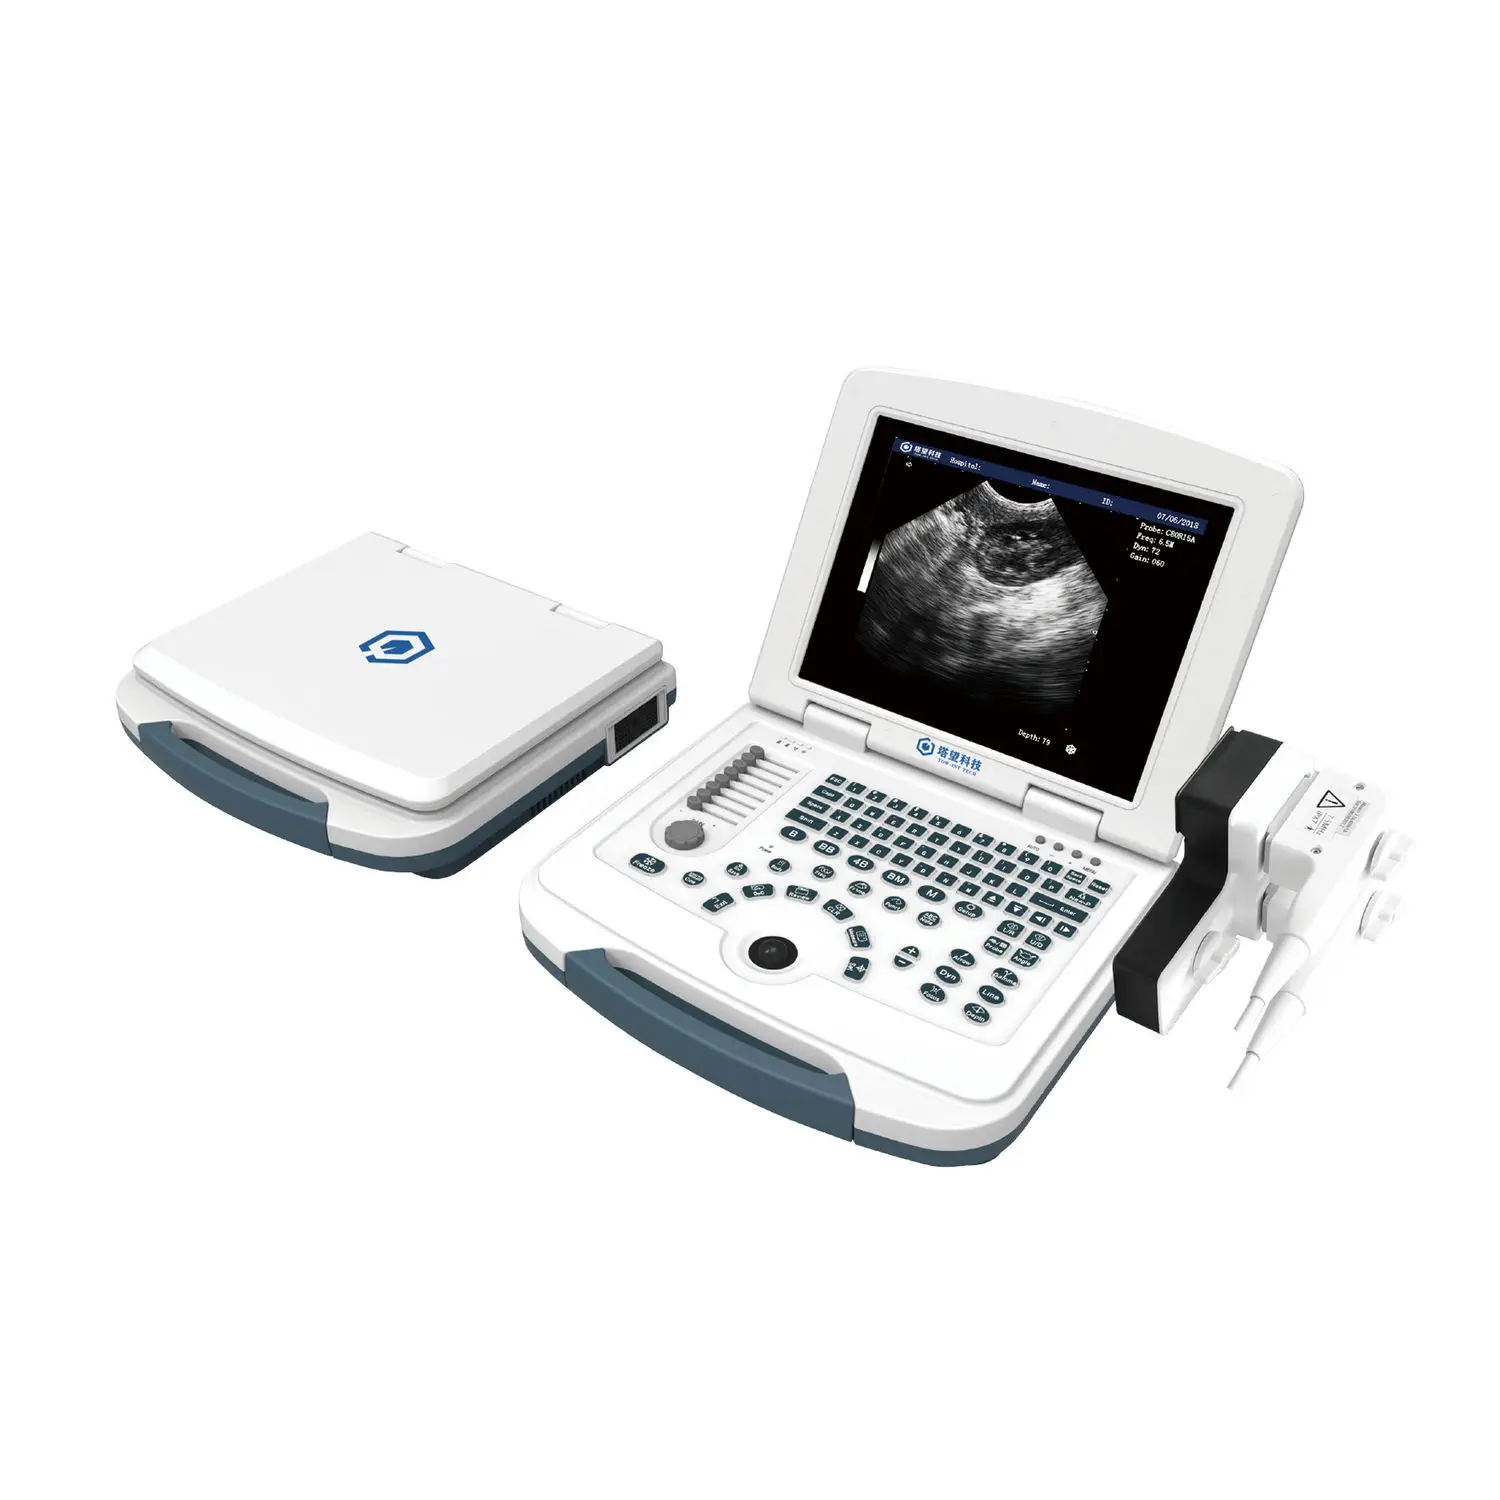 เครื่องอัลตราซาวด์แบบพกพาสำหรับสัตว์  Portable veterinary ultrasound system VSM 10  TOW Intelligent